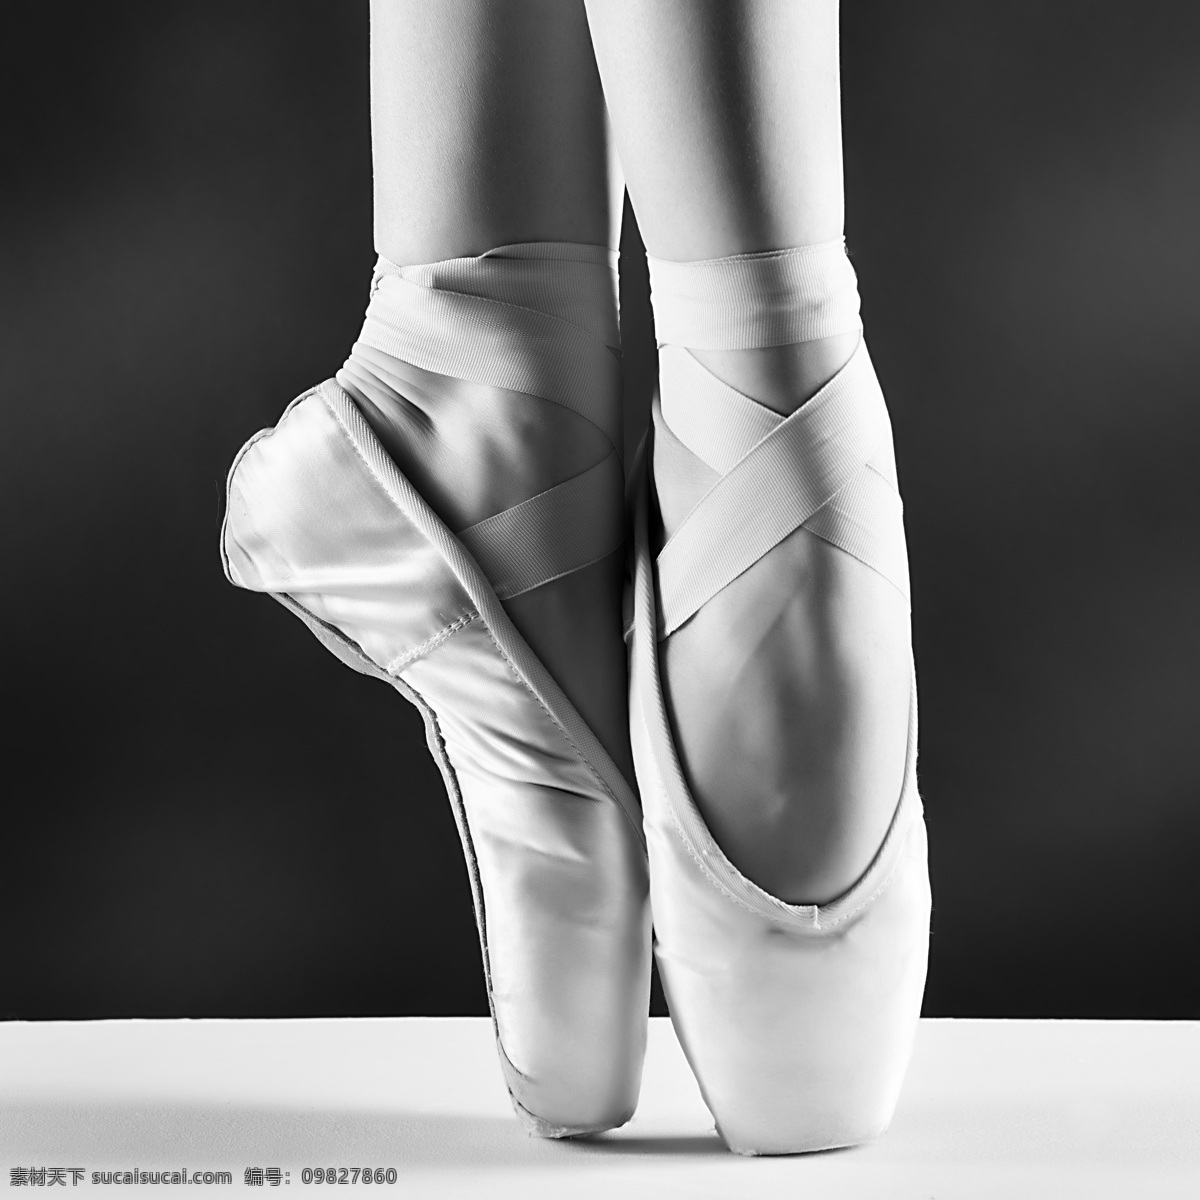 芭蕾舞 芭蕾舞踮脚尖 踮脚尖 芭蕾舞鞋 芭蕾舞鞋子 芭蕾舞特写 芭蕾舞基本功 芭蕾舞动作 优雅的芭蕾舞 芭蕾舞脚步 芭蕾舞脚部 文化艺术 舞蹈音乐